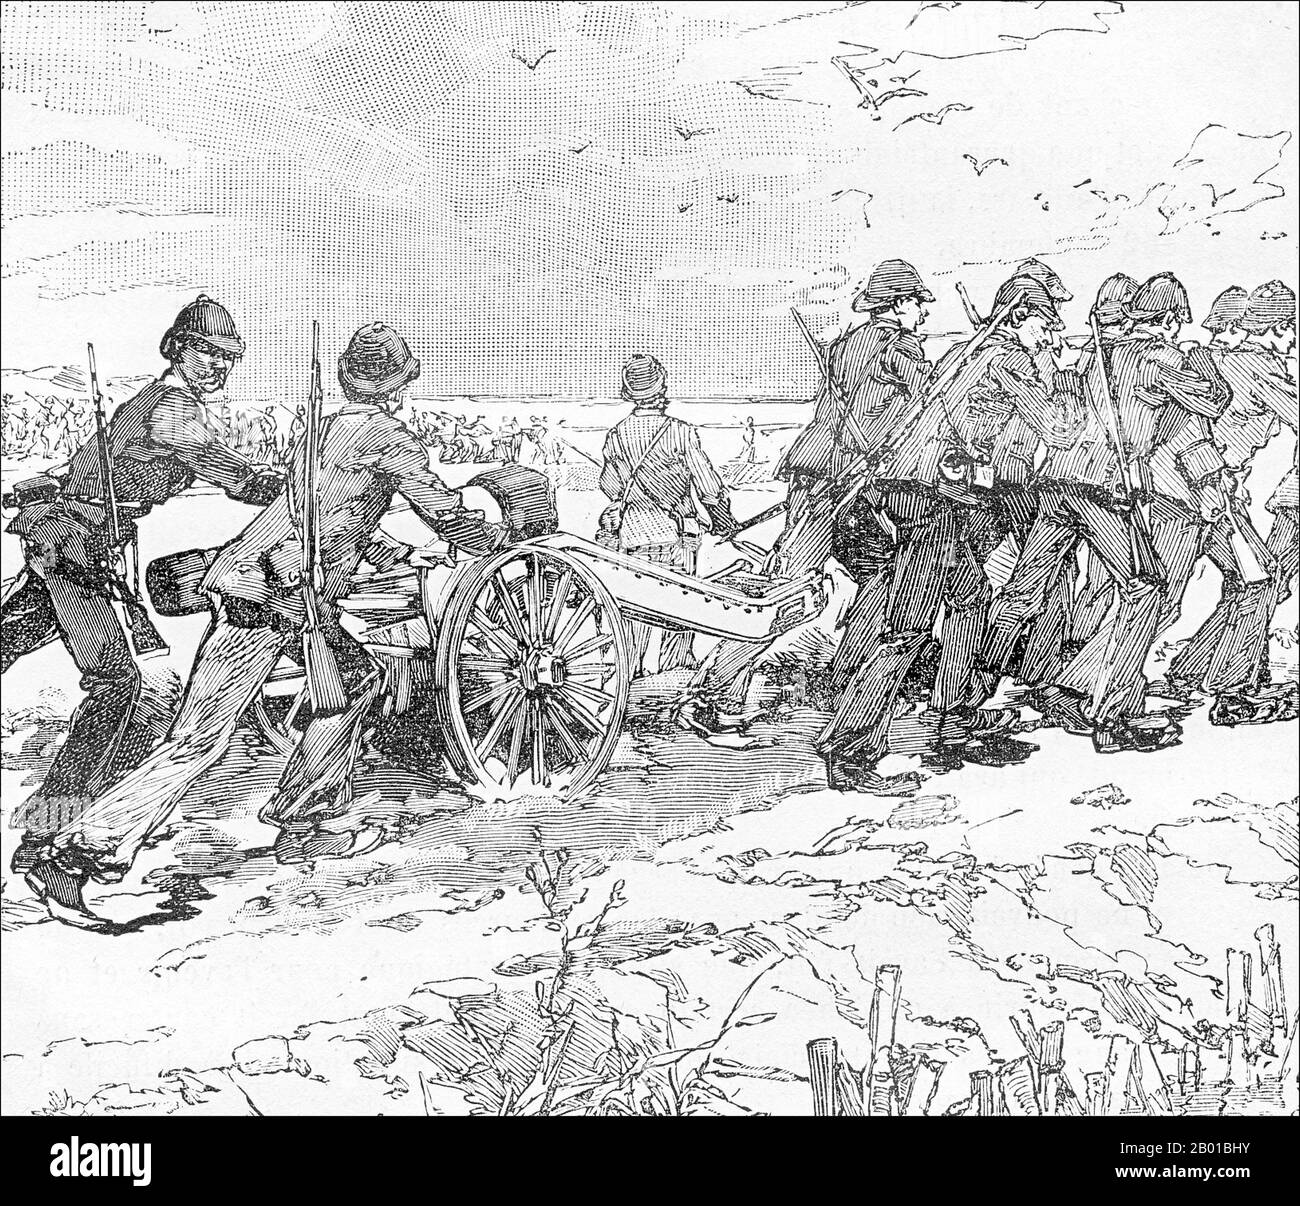 Vietnam/Frankreich: Französische Artilleriemänner in Palan bringen ihre Waffen gegen die Black Flags, 1. September 1883. Stich von Charles-Lucien Huard (12. Februar 1837 - 22. Januar 1899), 1887. Die Tonkin-Kampagne (französisch: Campagne du Tonkin) war ein bewaffneter Konflikt, der zwischen Juni 1883 und April 1886 von den Franzosen gegen die Vietnamesen, Liu Yongfus Armee mit schwarzer Flagge und die chinesischen Armeen Guangxi und Yunnan geführt wurde, um Tonkin (Nordvietnam) zu besetzen und dort ein französisches Protektorat zu verankern. Stockfoto